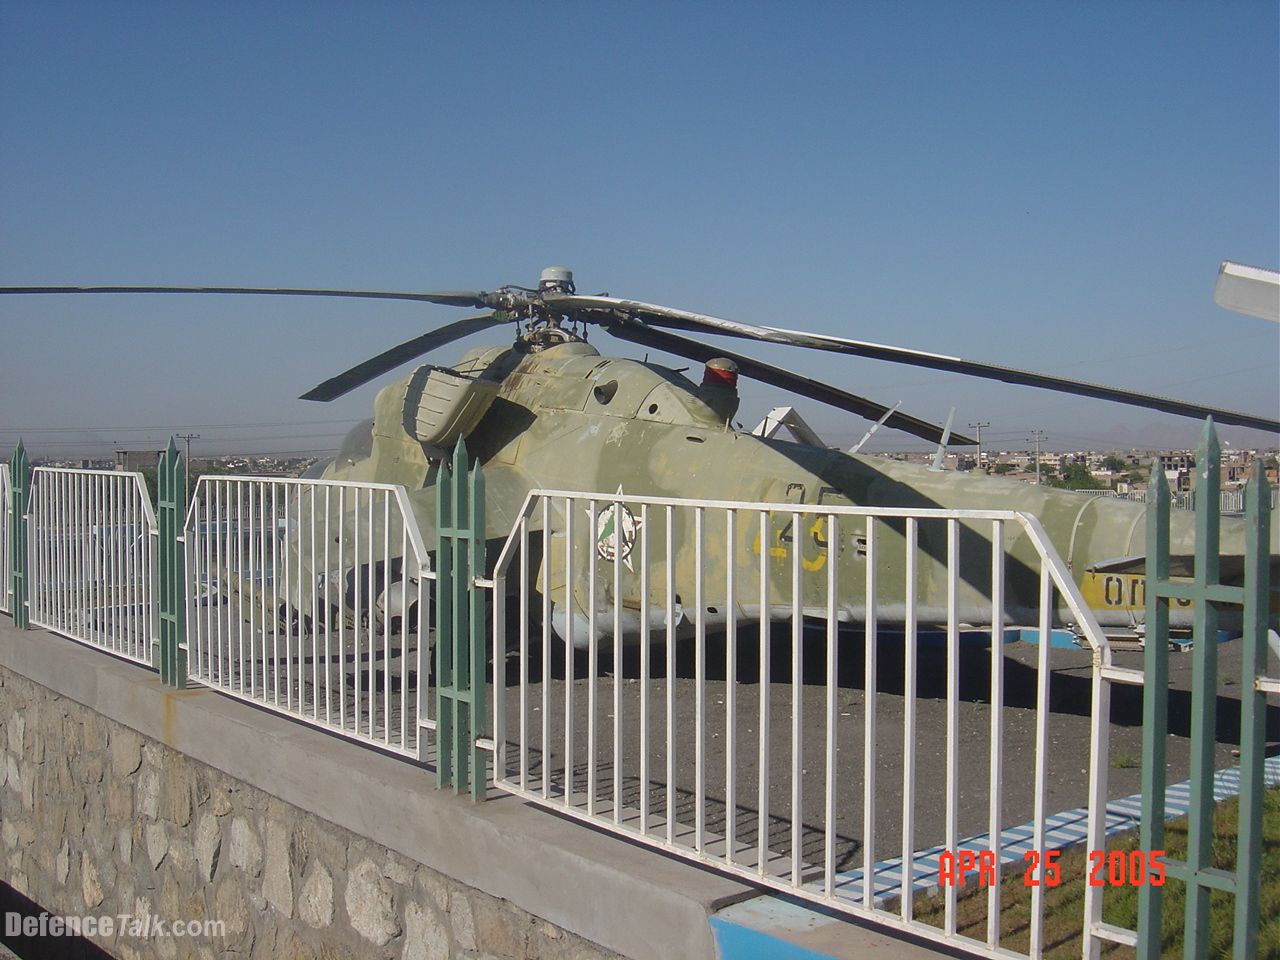 Mi-24 in Herat